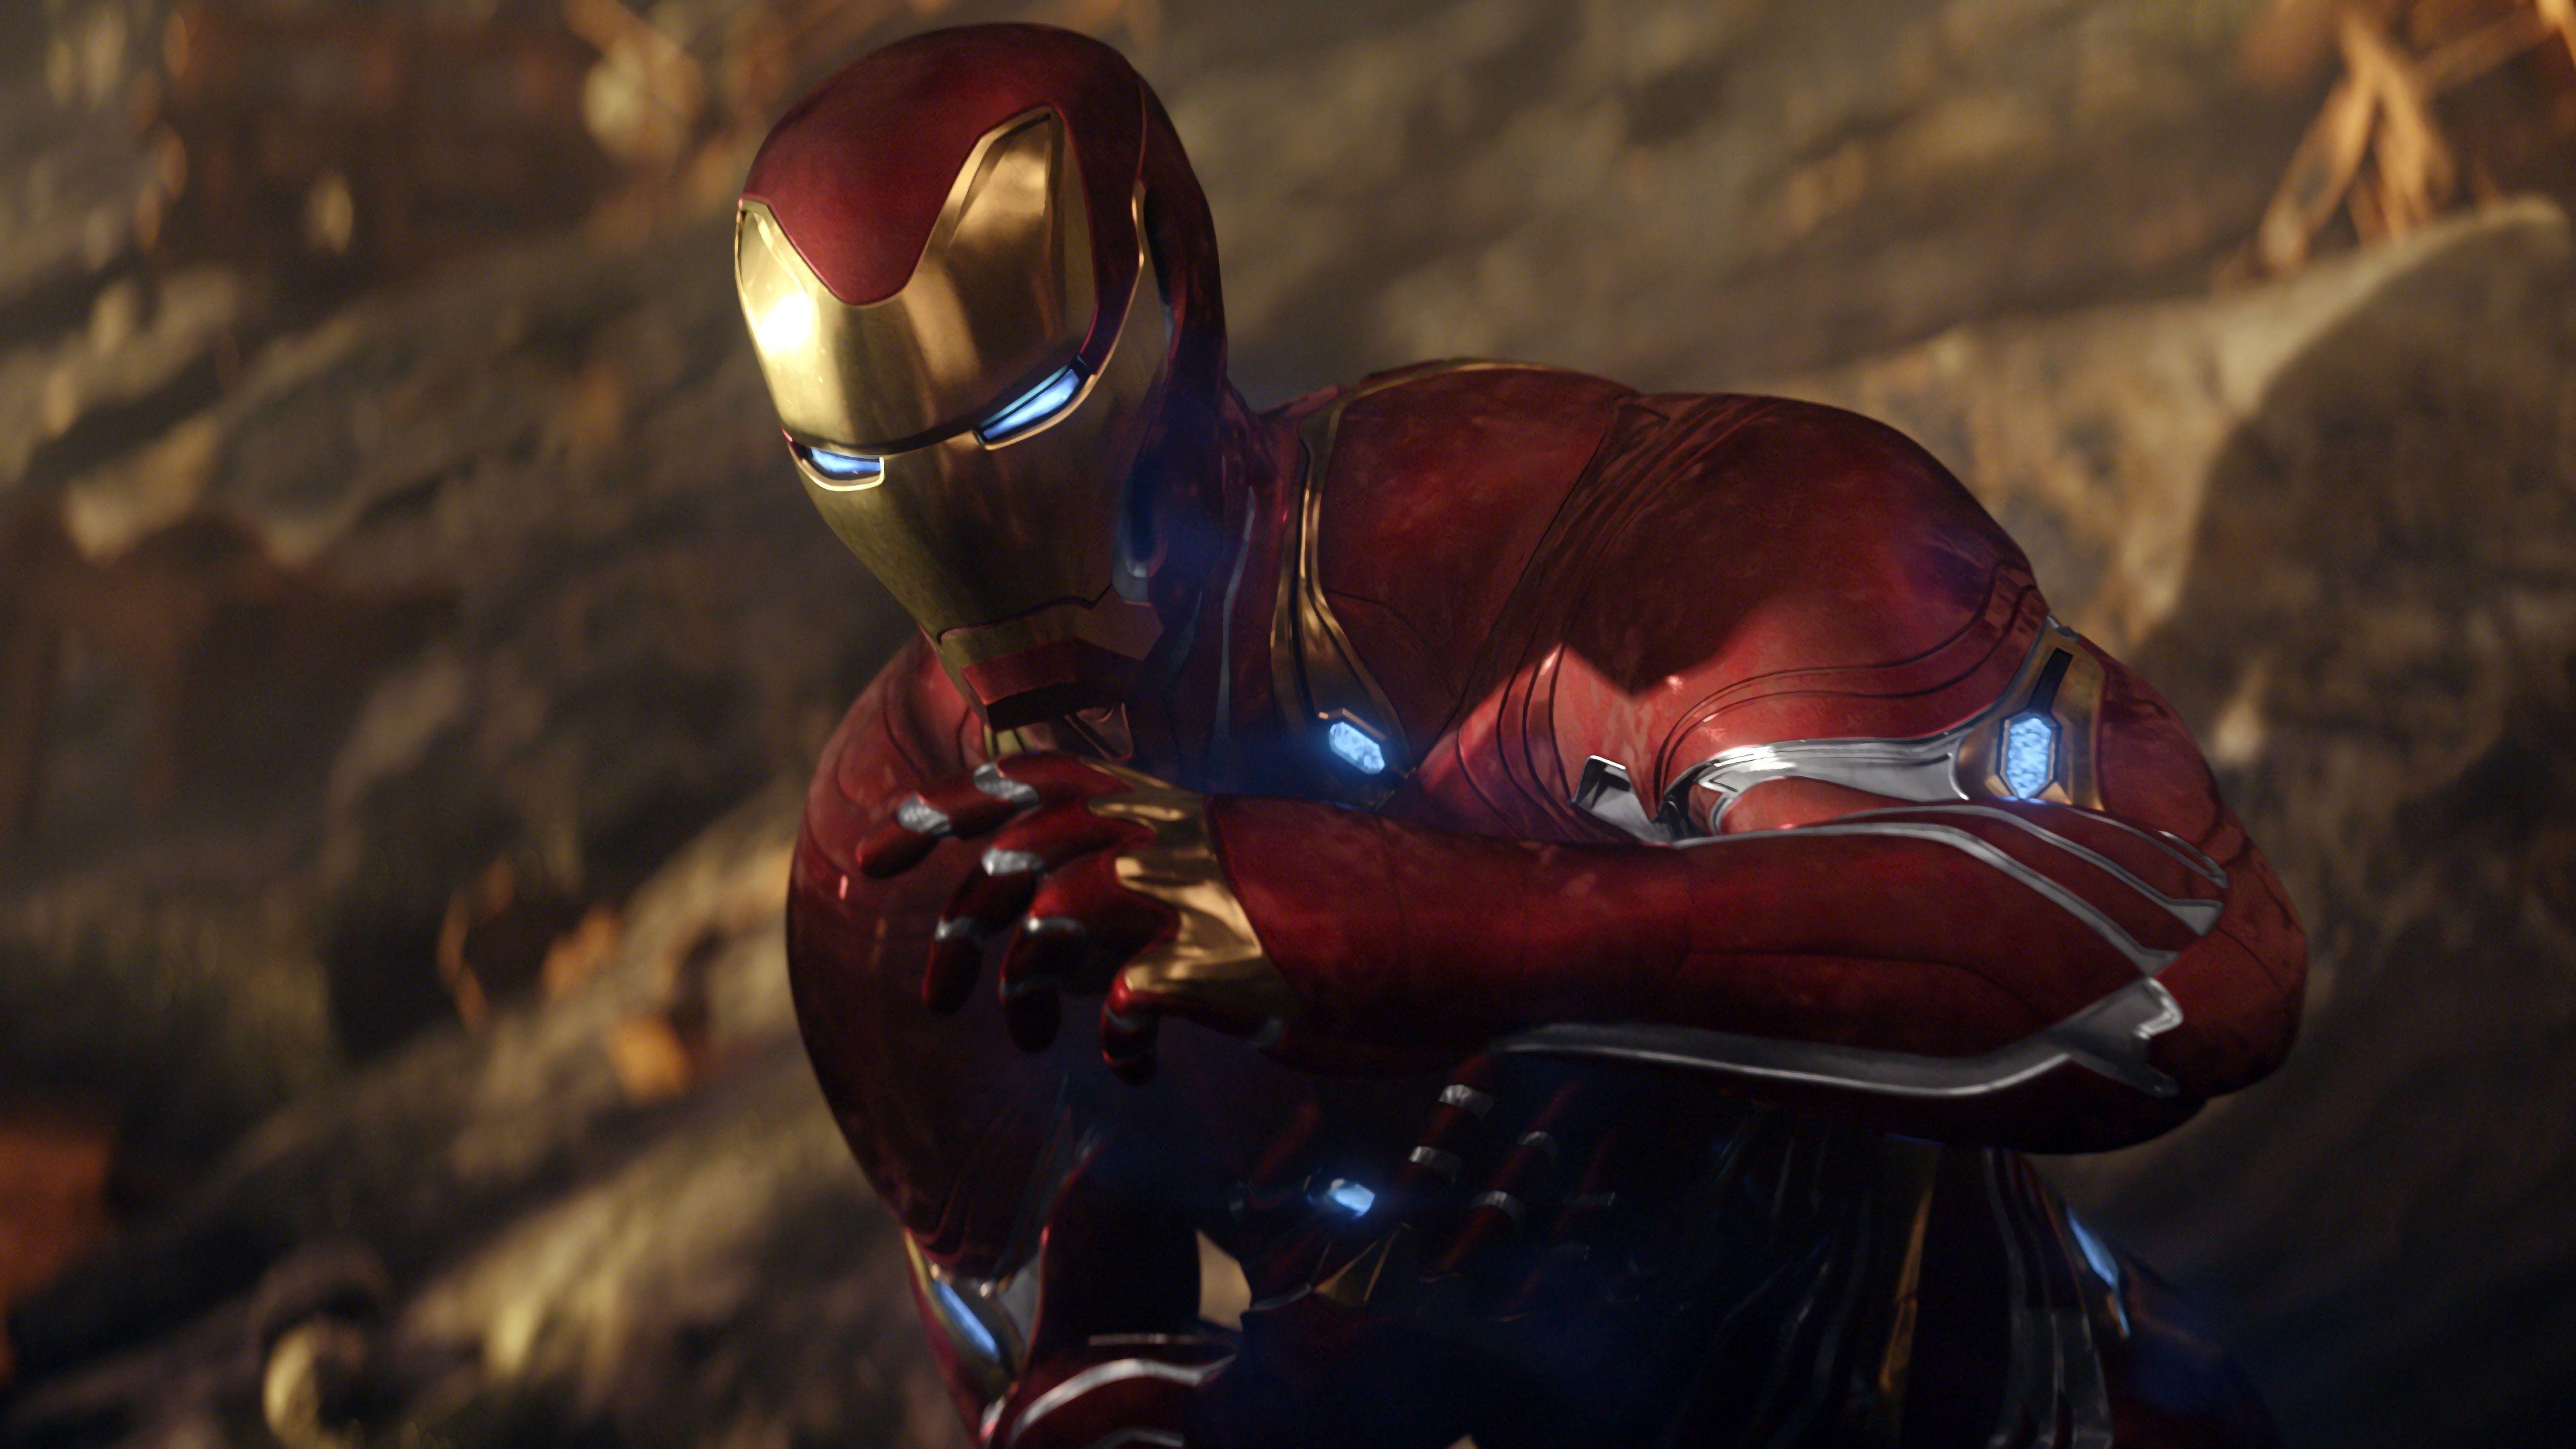 Avengers: Infinity War (2018) Iron Man 4K UHD 16:9 3840x2160 Wallpaper